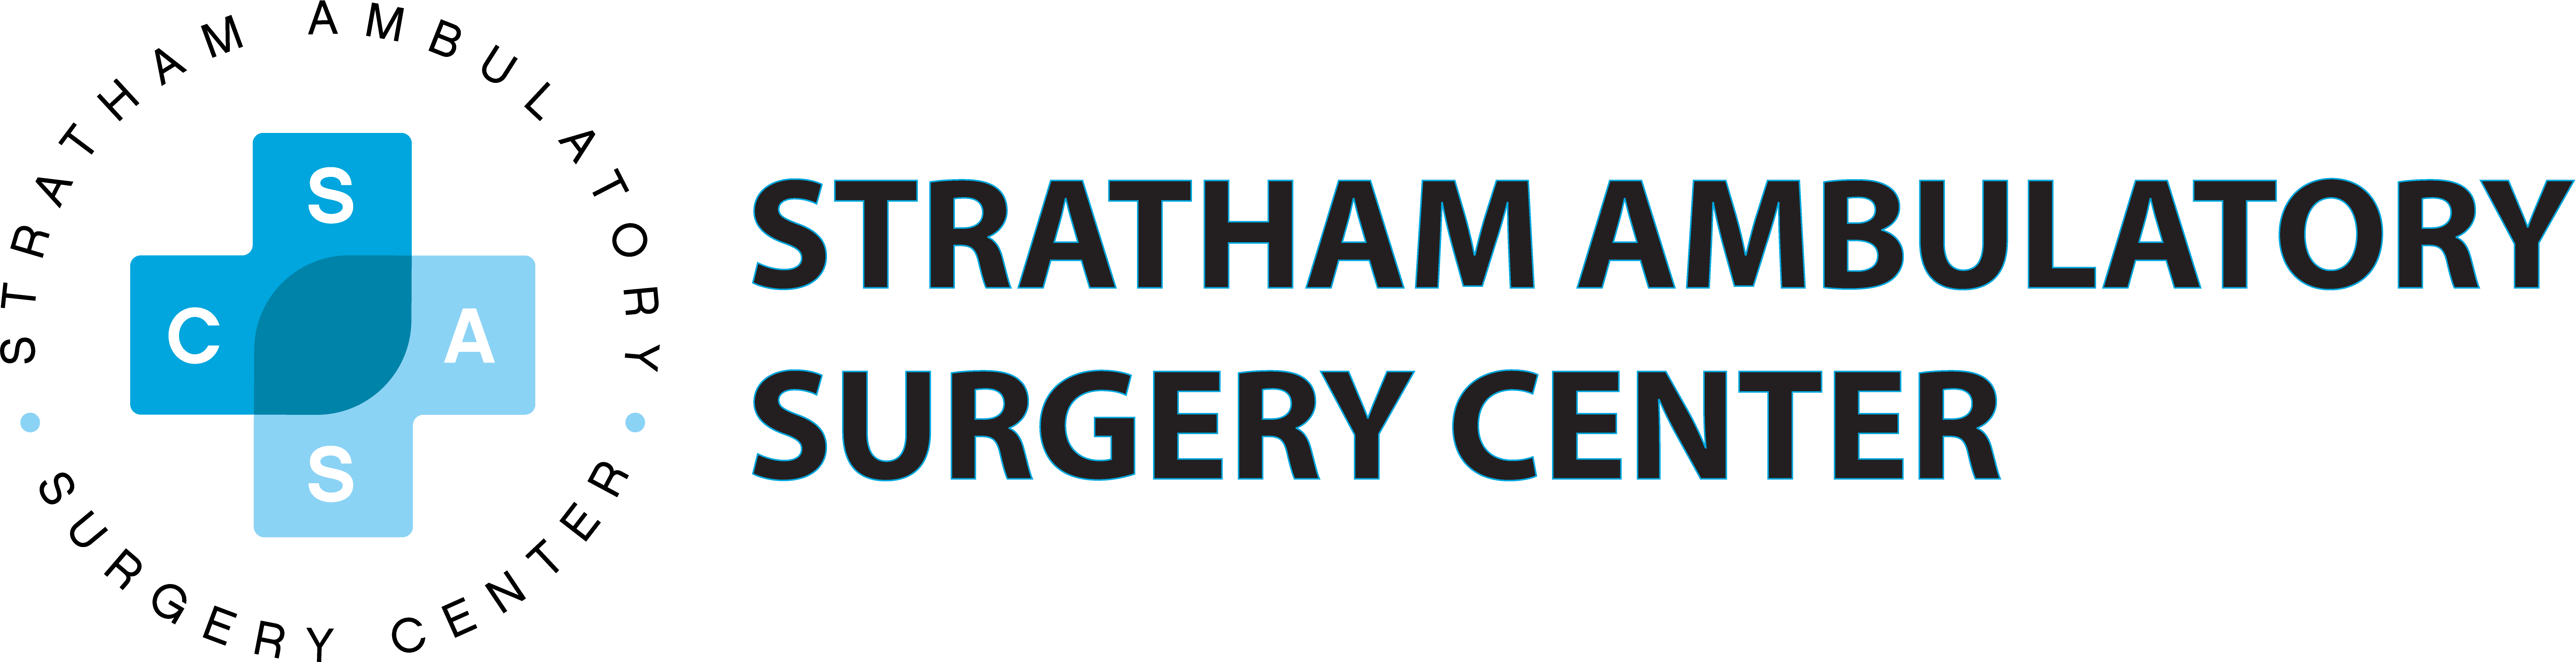 Stratham Ambulatory Surgery Center